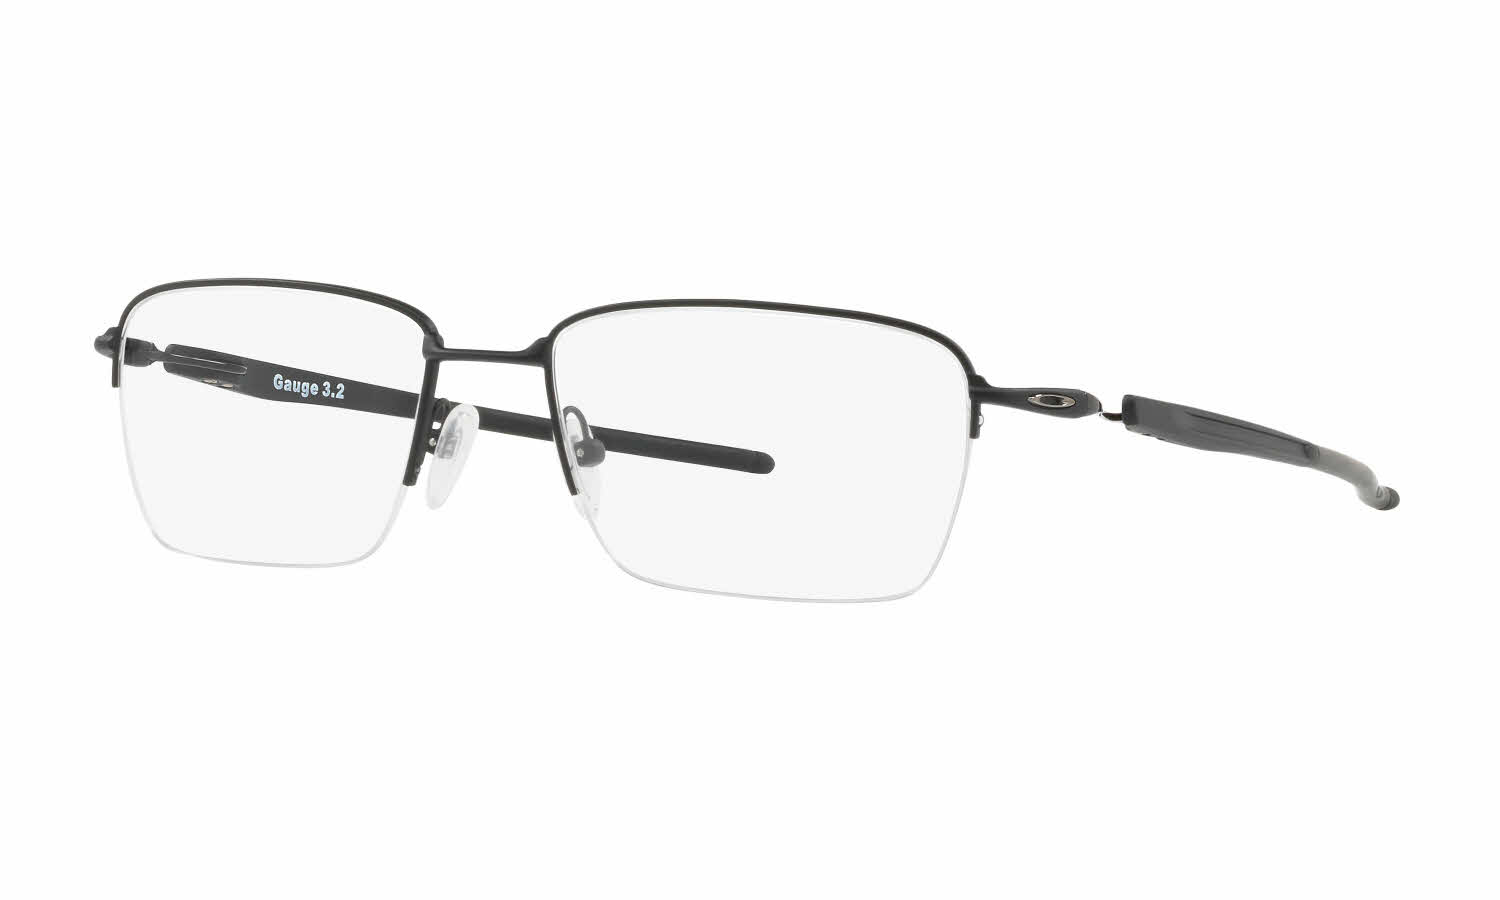 Oakley Gauge 3.2 Blade Eyeglasses 